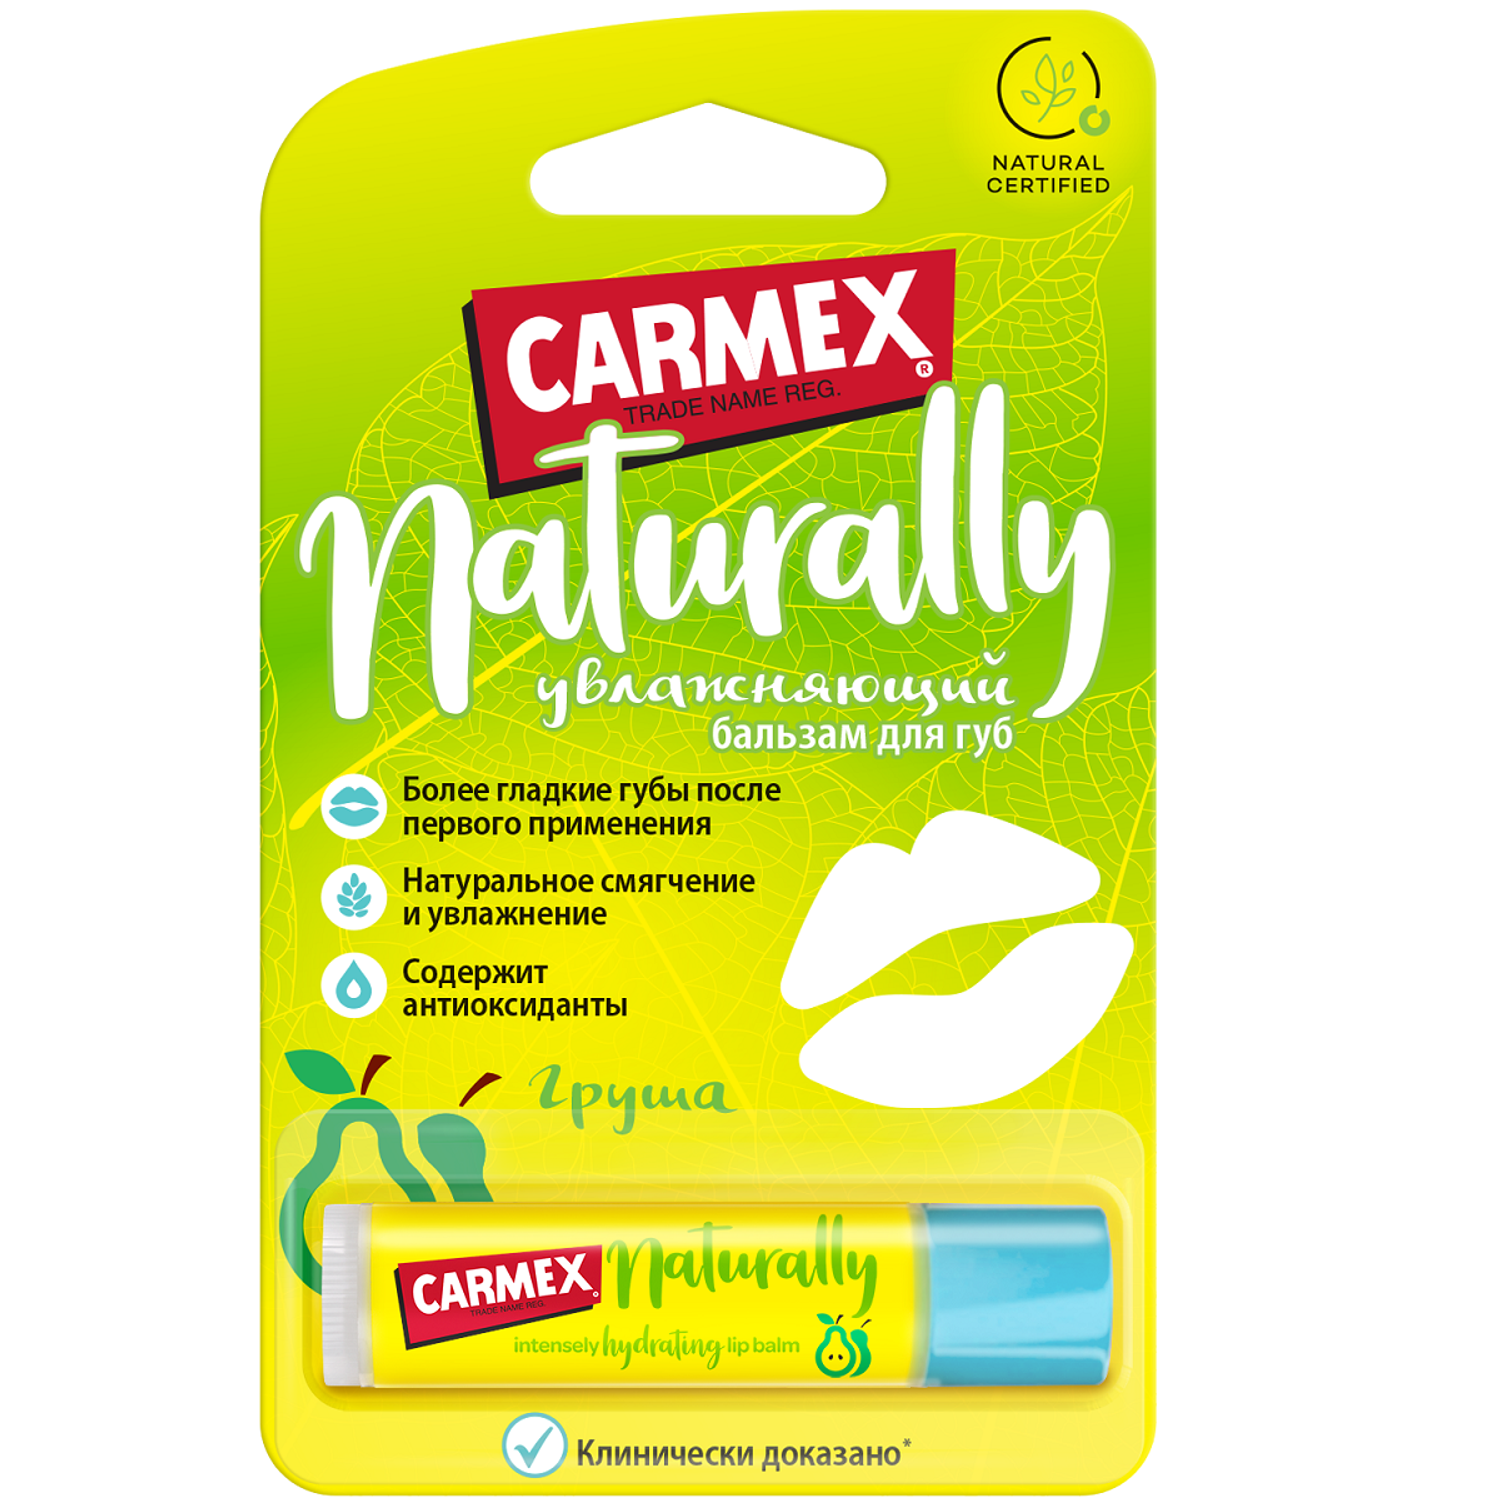 Бальзам для губ CARMEX натуральный с ароматом груши - фото 2